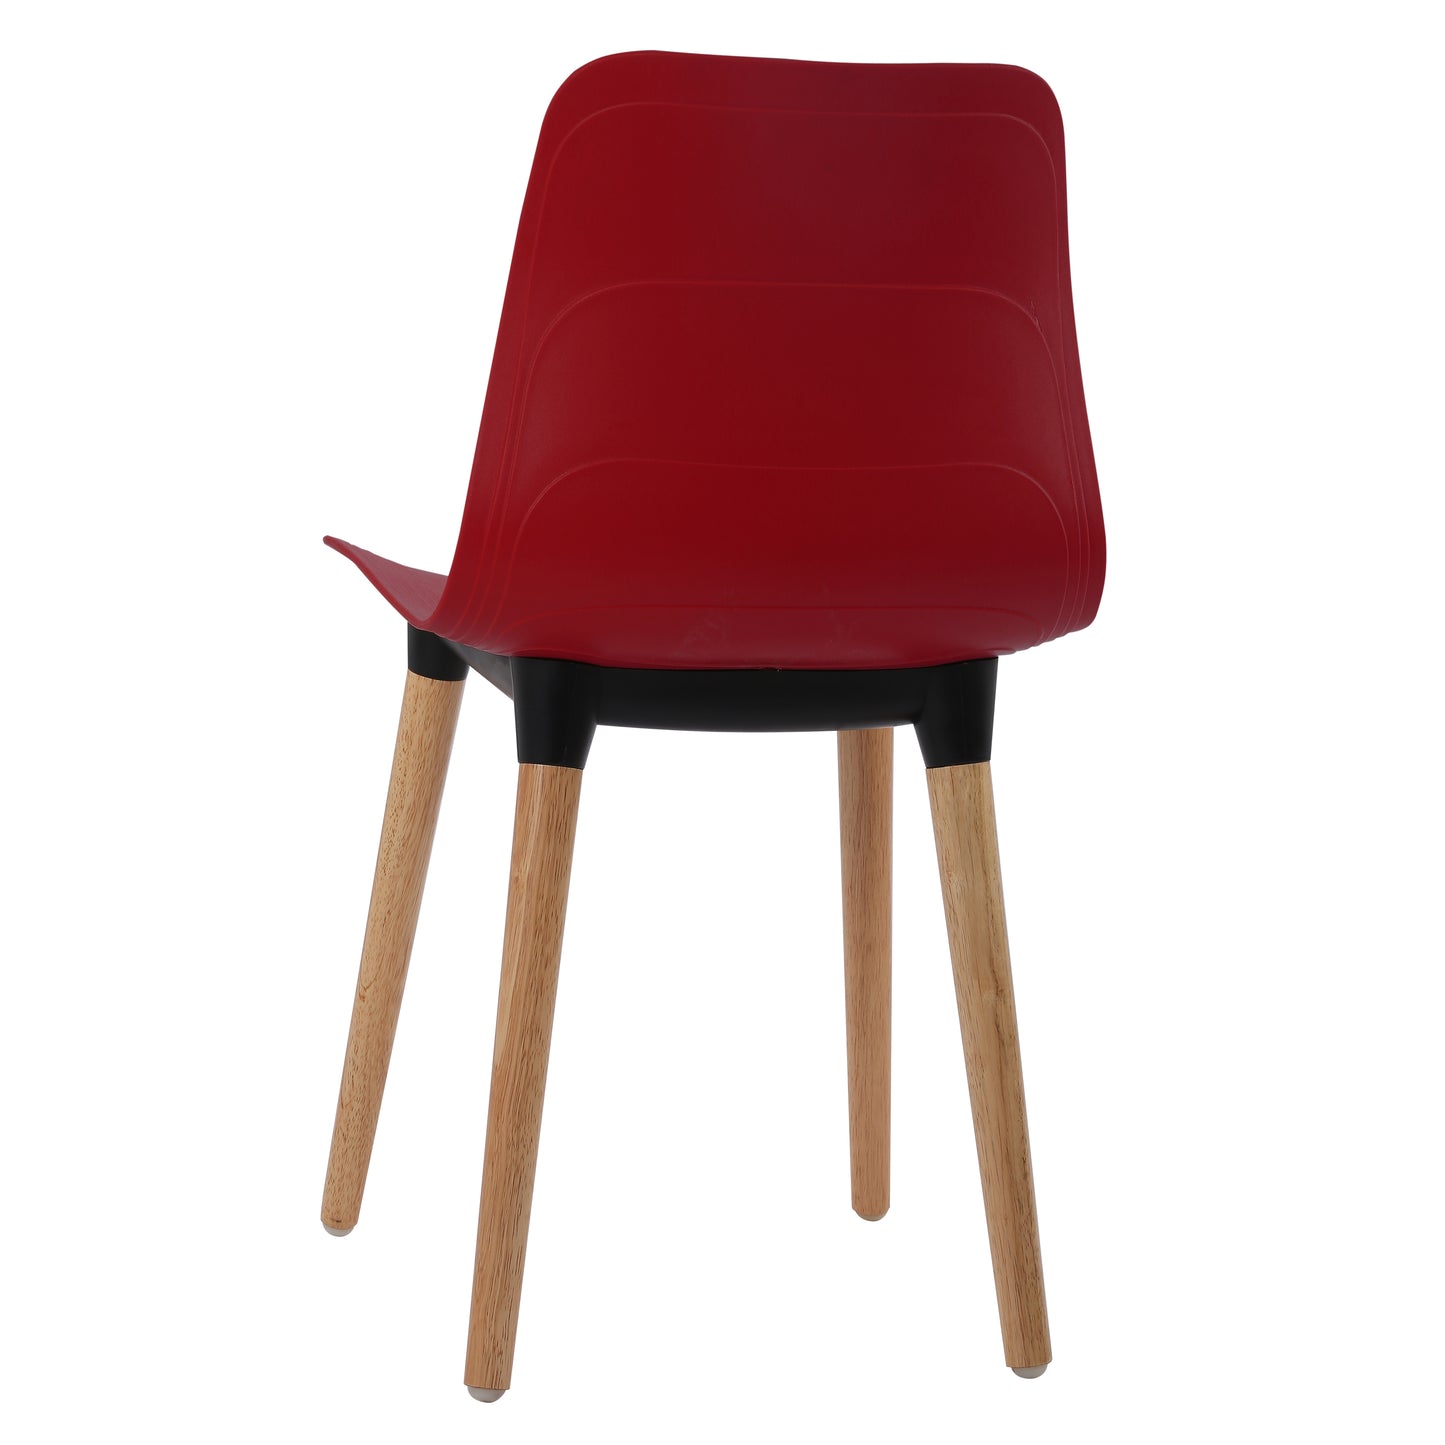 Ghế nhựa chân gỗ - HIFUWA-G (Đỏ đậm)